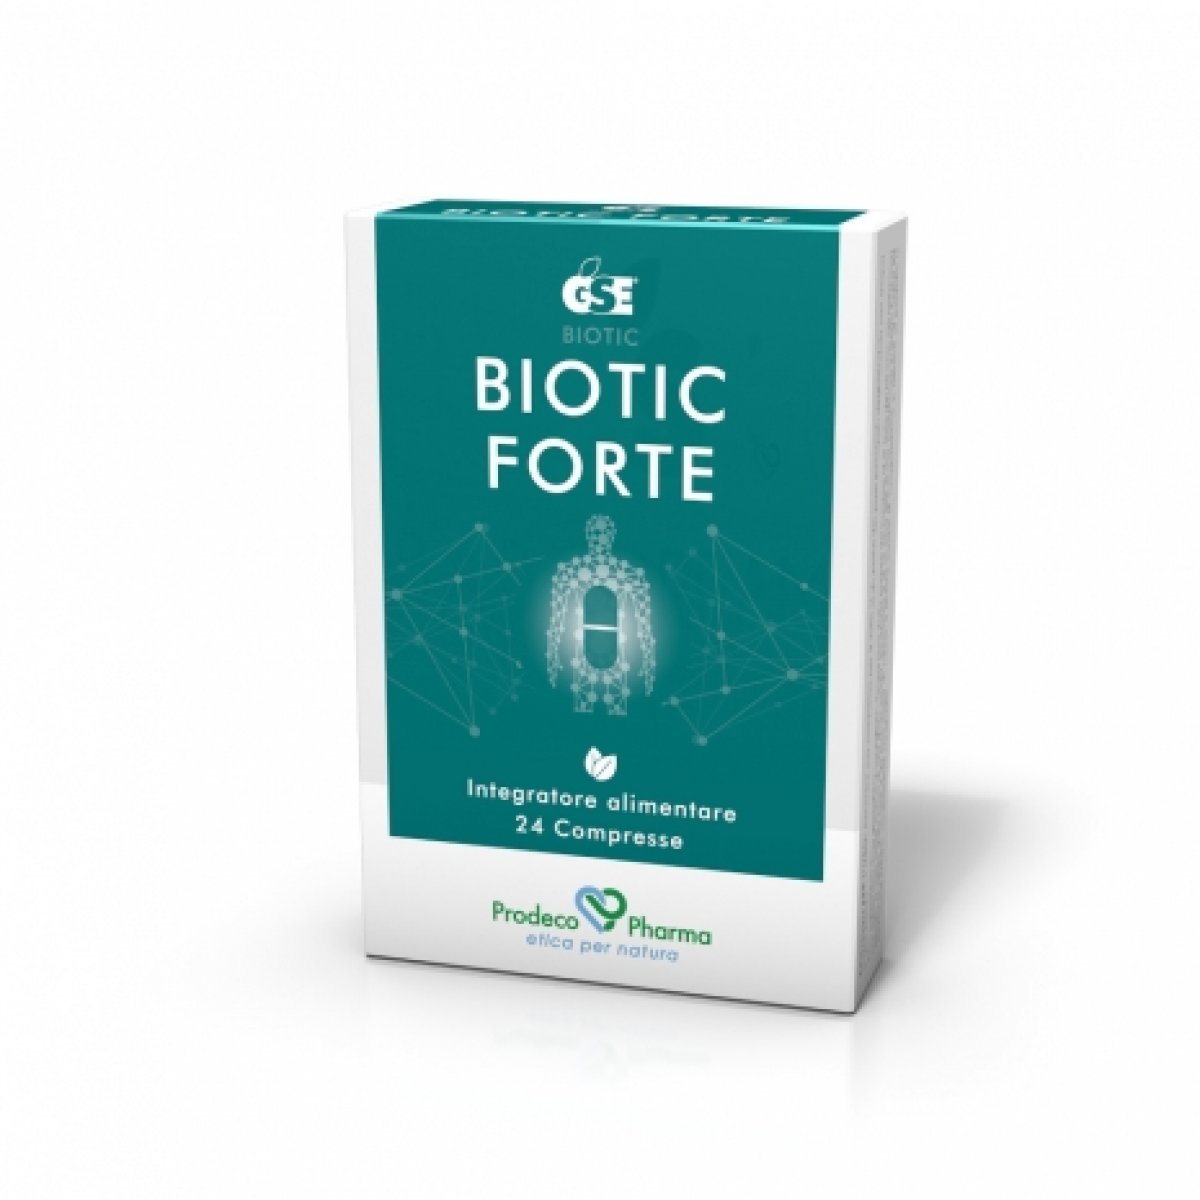 GSE  Biotic FORTE - Prodeco Pharma GSE Biotic forte è L'ALTERNATIVA NATURALE agli antibiotici di sintesi e alle cure cortisoniche, EFFICACE e priva di effetti collaterali. 24 compresse